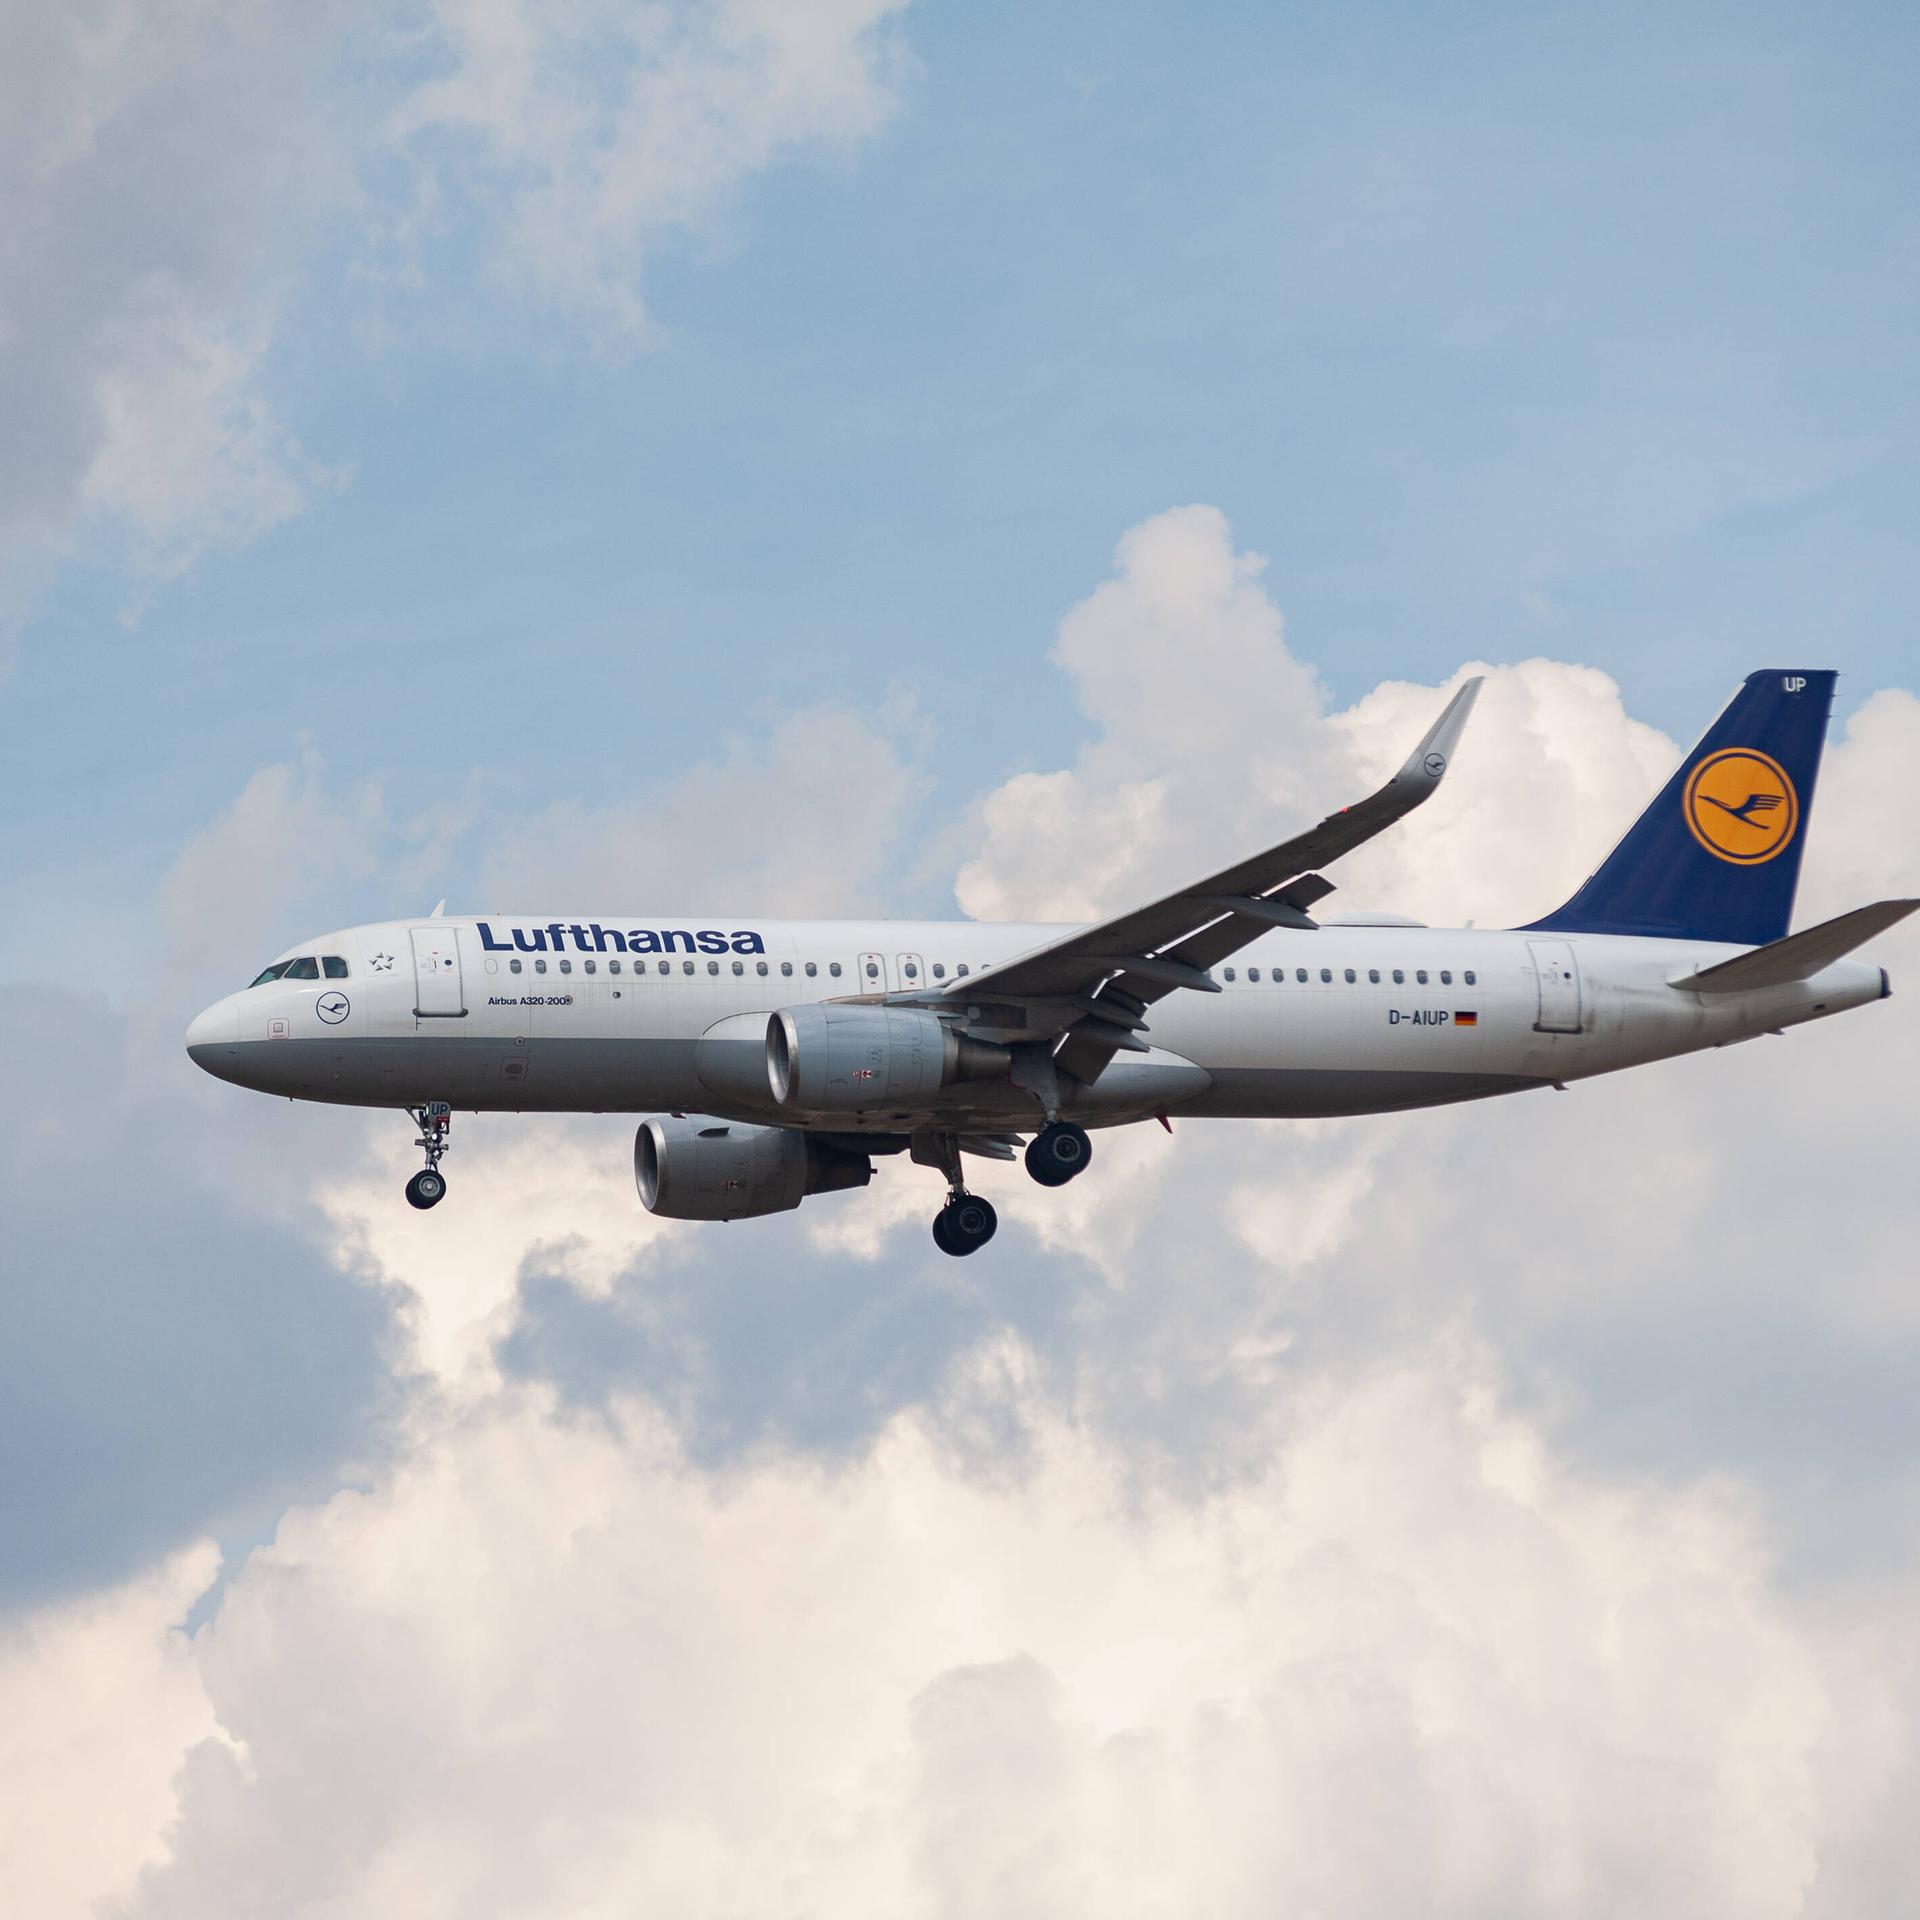 31.07.2022, Berlin, Deutschland, Europa - Ein Passagierflugzeug vom Typ Airbus A320-200 der Lufthansa mit der Registrier